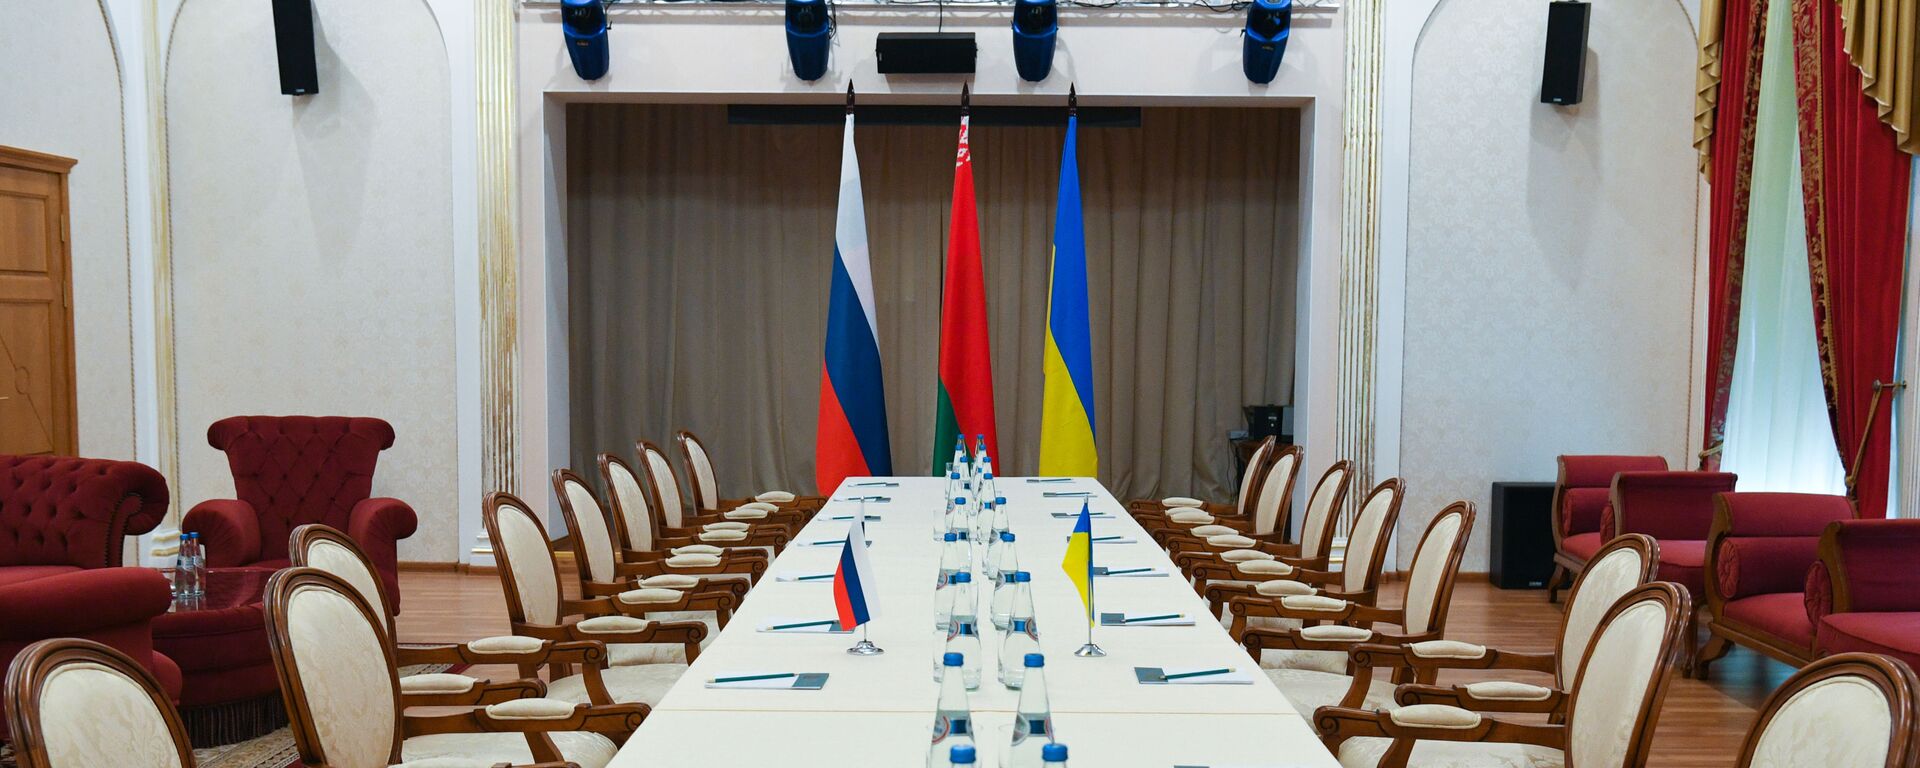 Hội trường nơi diễn ra cuộc hội đàm giữa Nga và Ukraina - Sputnik Việt Nam, 1920, 02.03.2022